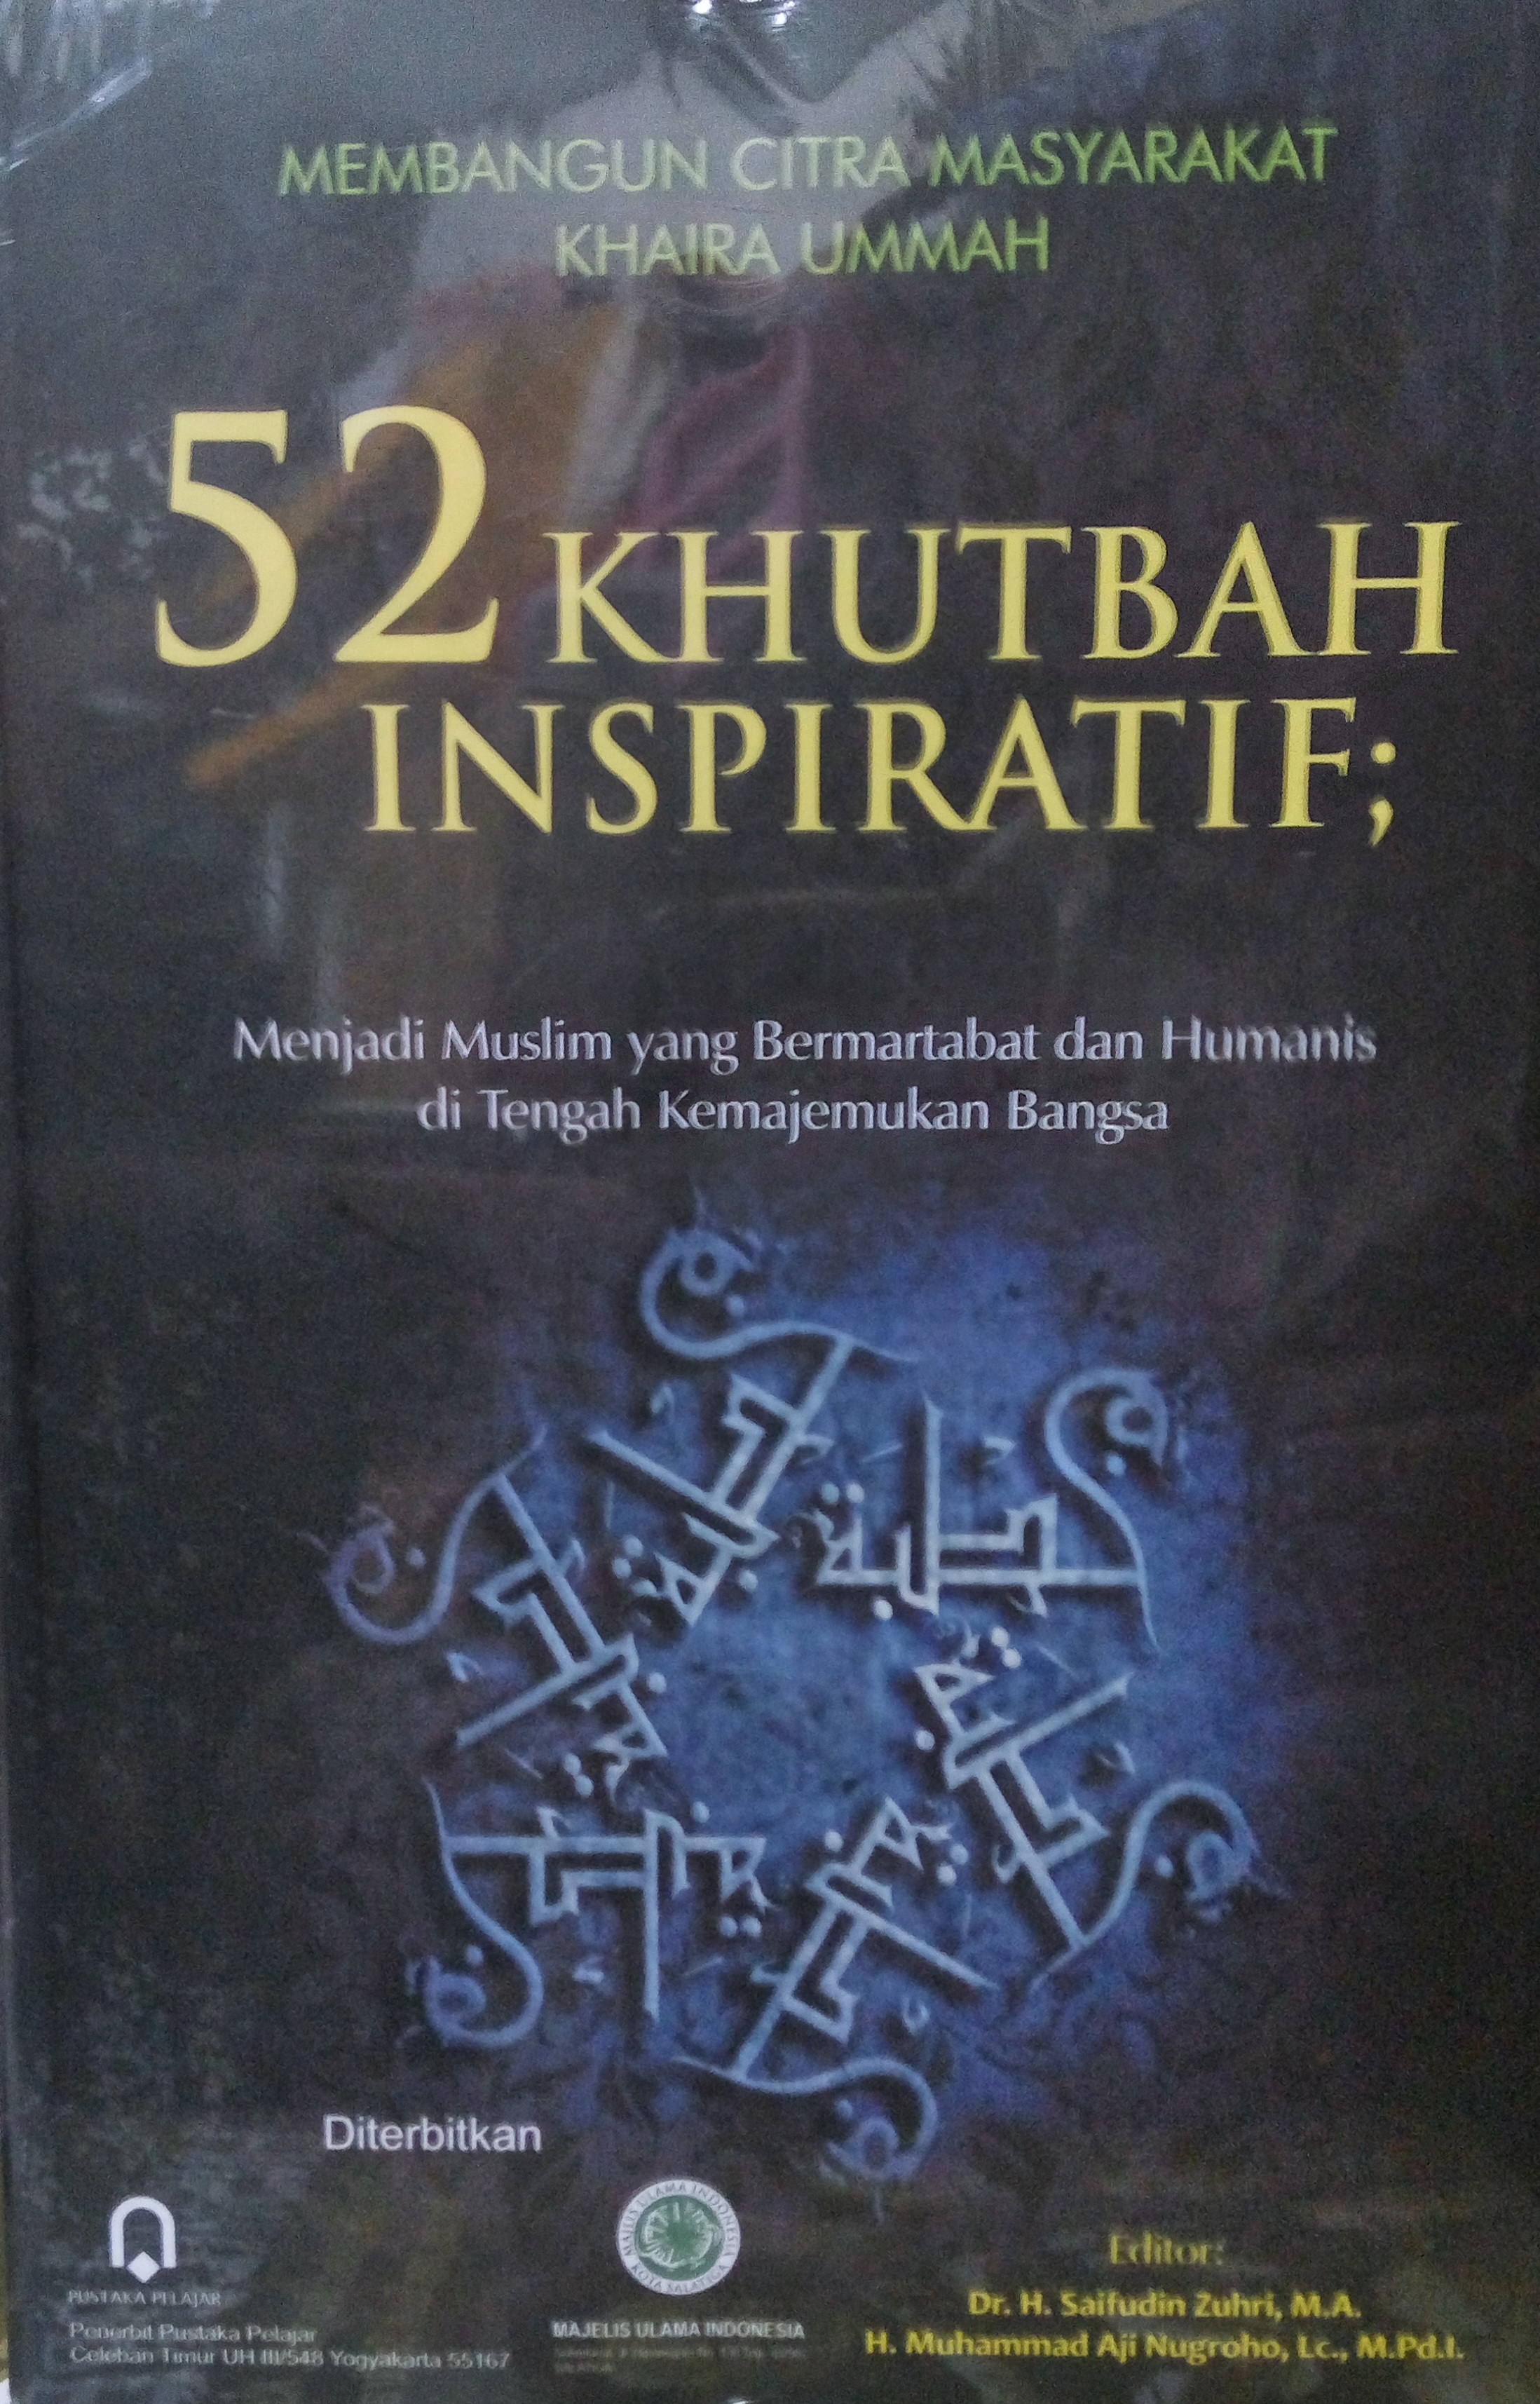 52 KHUTBAH INSPIRATIF MENJADI MUSLIM